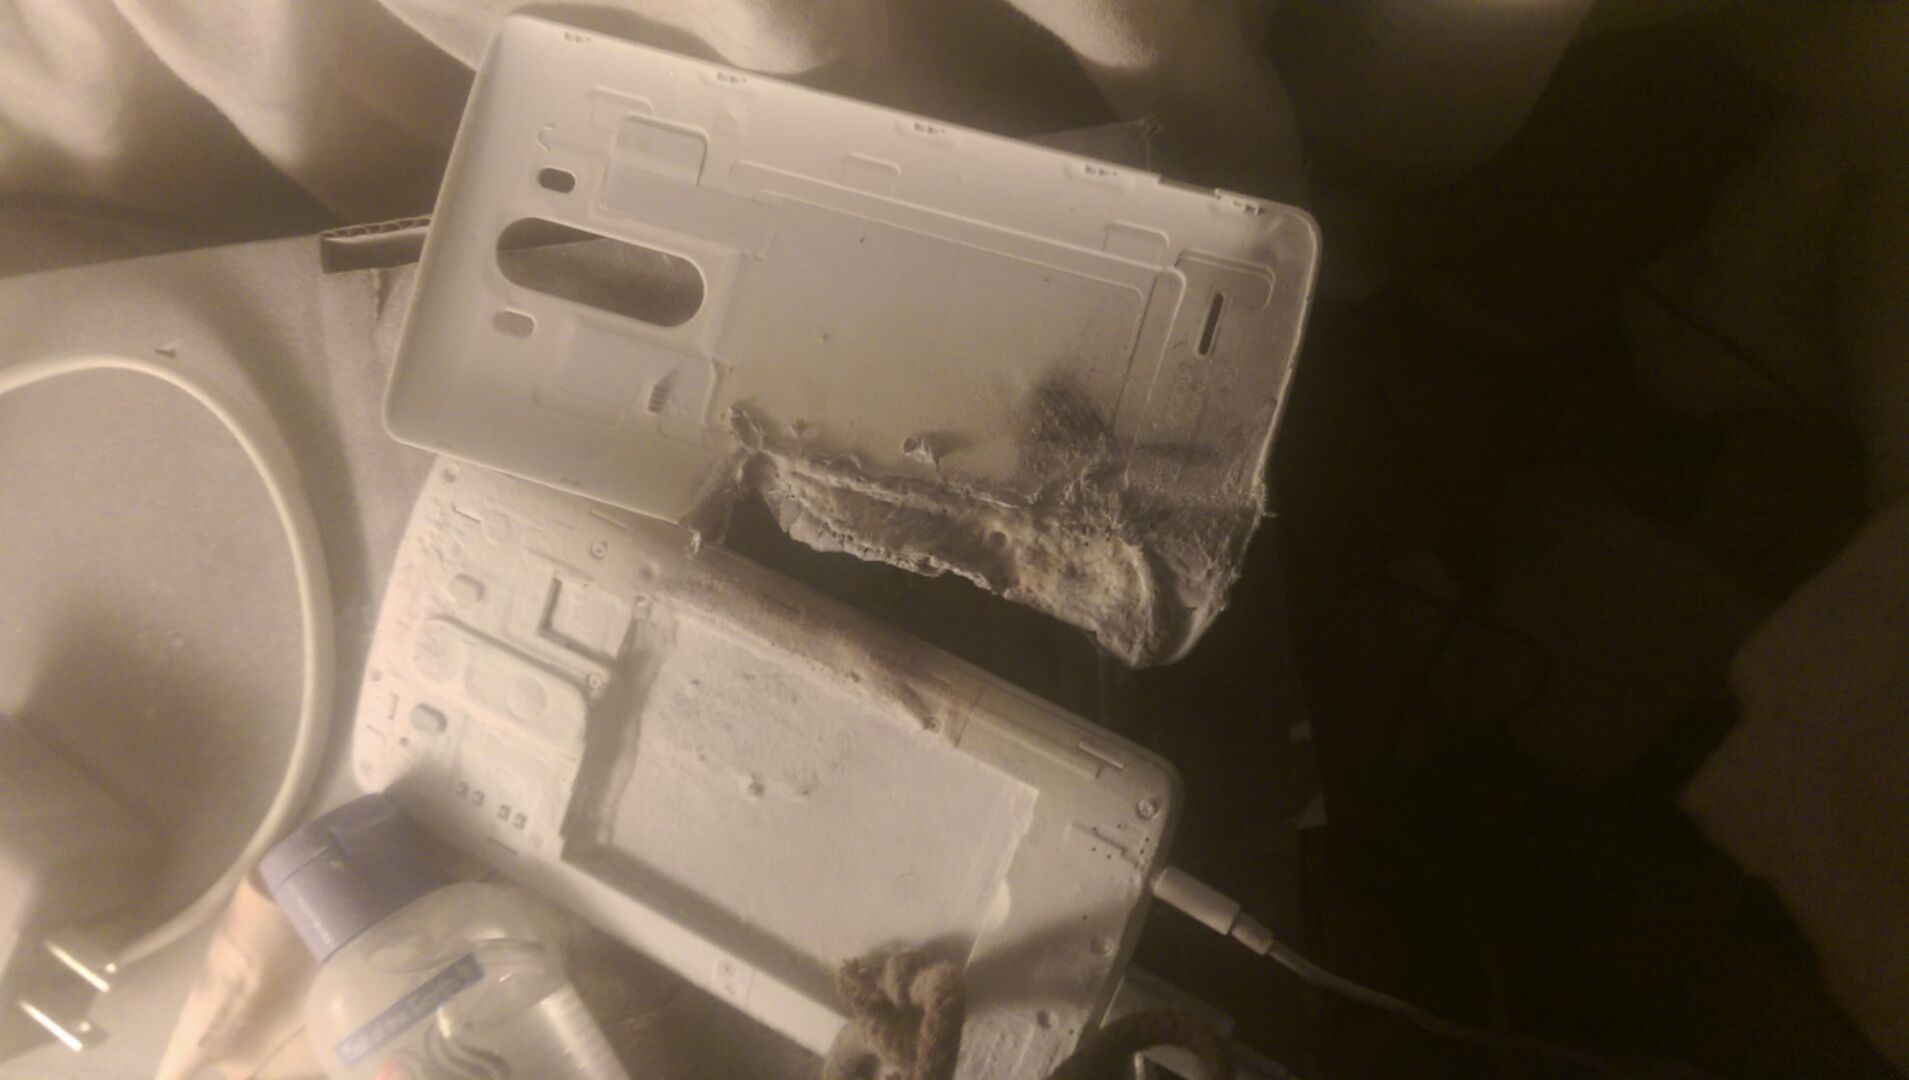 LG G3 Battery Explodes, Burns Through Mattress